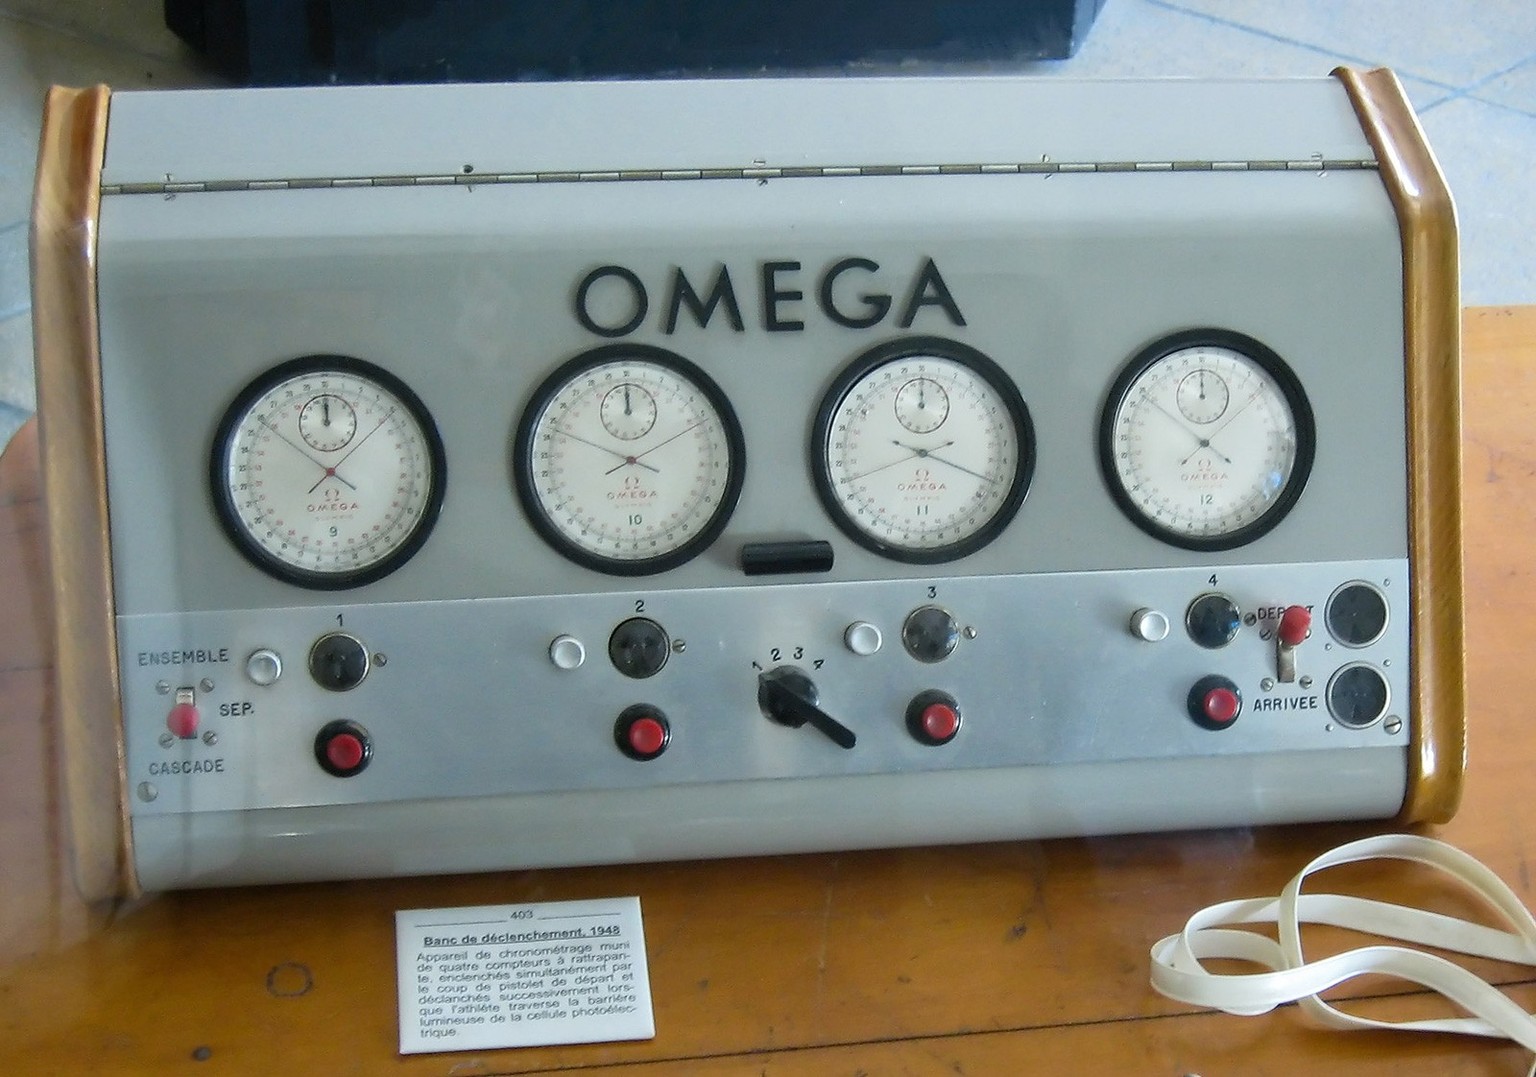 Vollautomatischer Chronograph von Omega, 1948. Die vier Zeitmesser wurden durch die Startpistole ausgelöst und mithilfe von Lichtzellen angehalten. https://commons.wikimedia.org/wiki/File:Banc_de_d%C3 ...